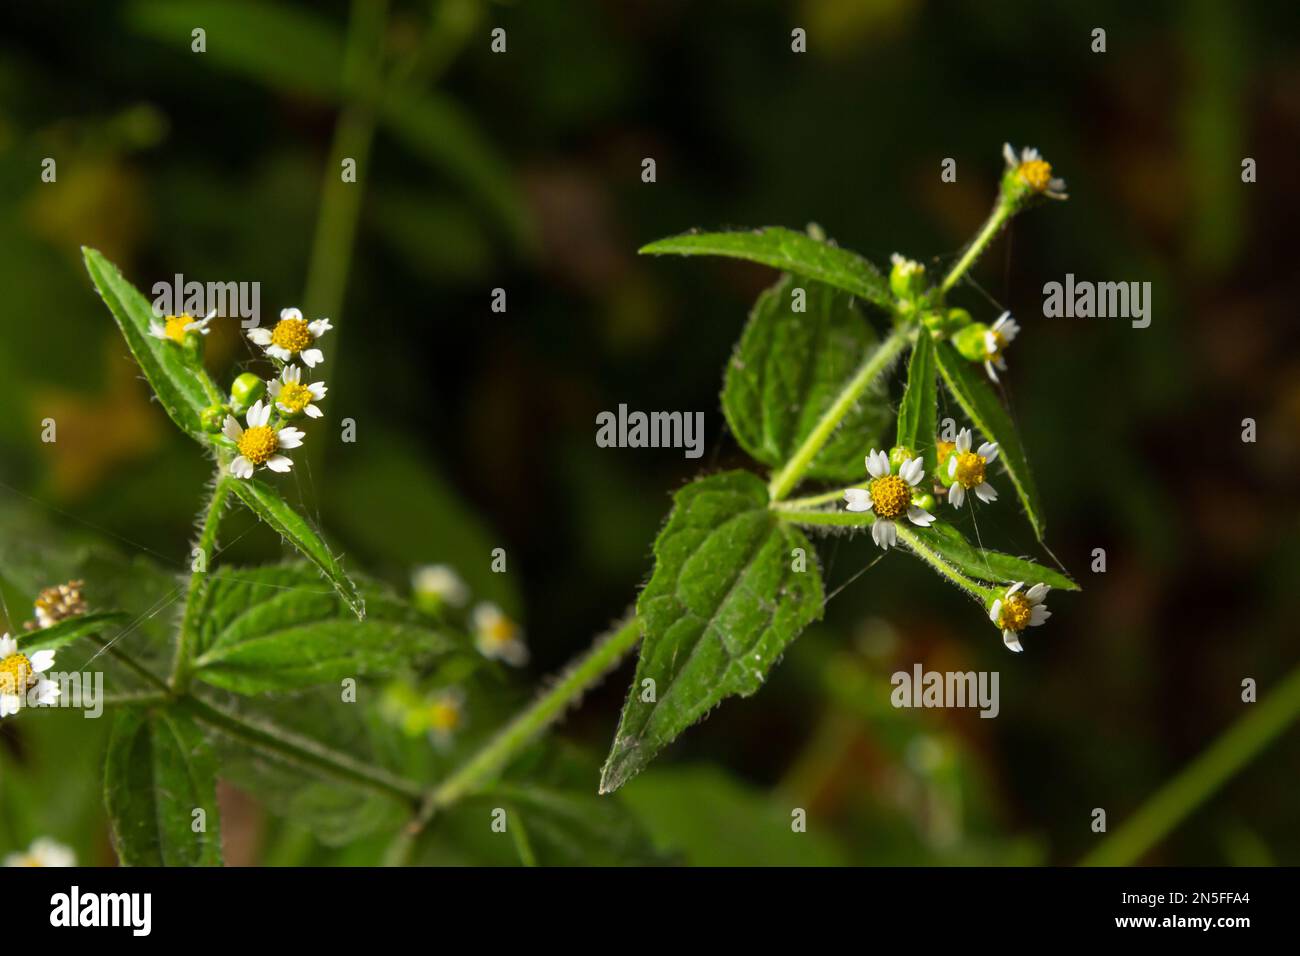 Nahaufnahme Galinsoga quadriradiata ist eine blühende Pflanzensorte der Familie Asteraceae, die unter mehreren gebräuchlichen Namen bekannt ist, einschließlich Shag Stockfoto